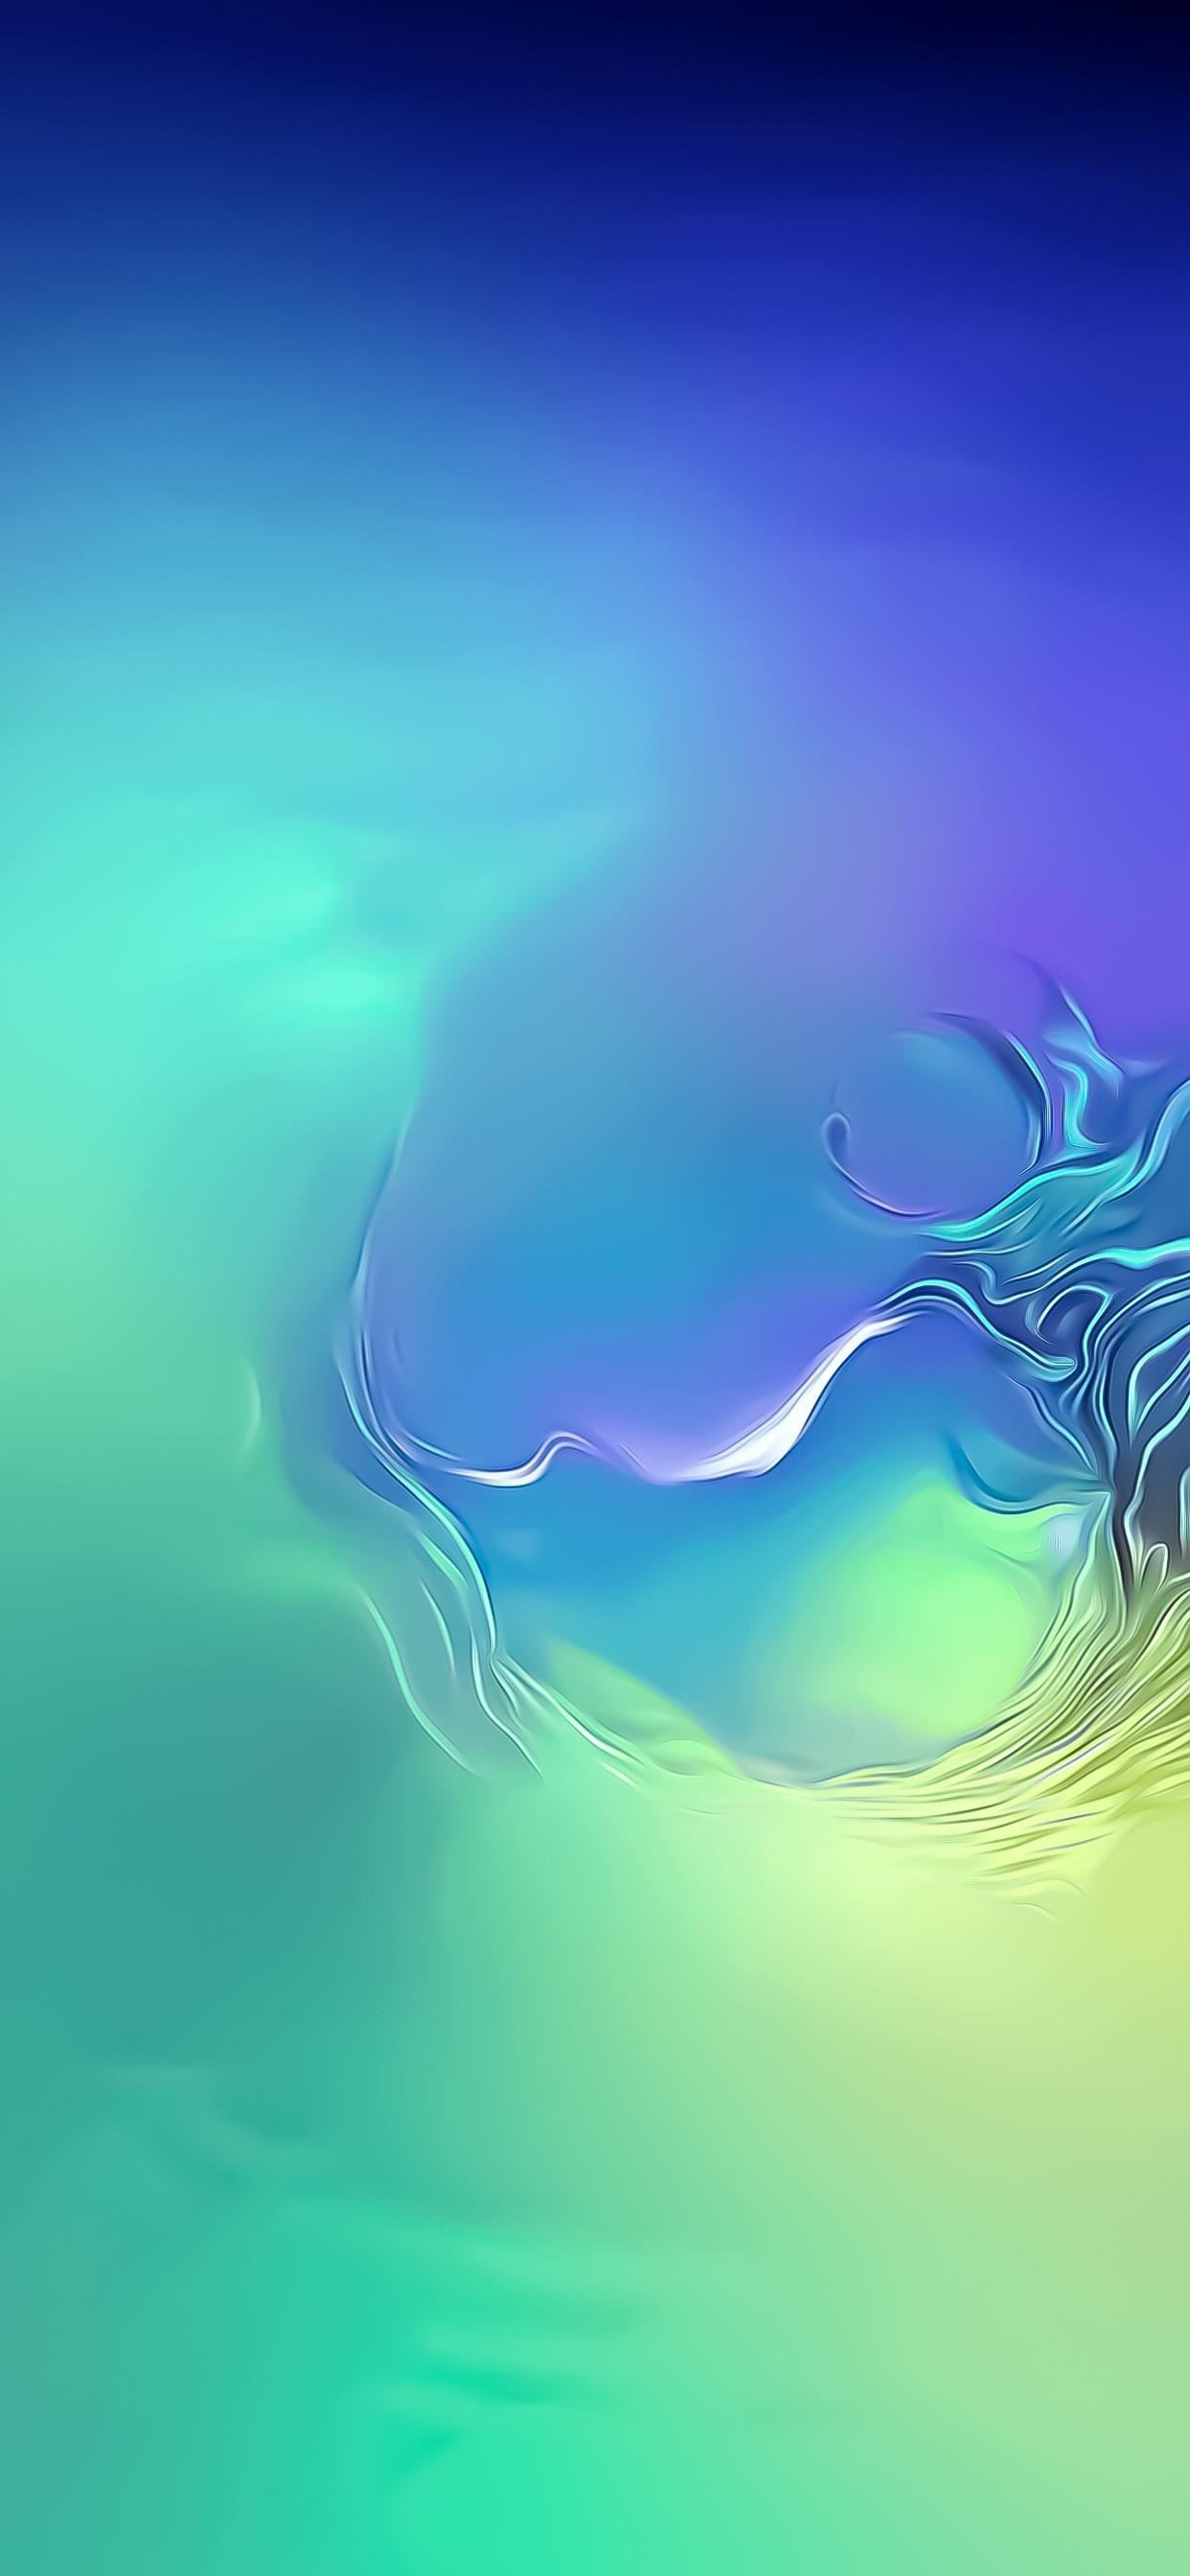 fond d'écran samsung,bleu,ciel,l'eau,aqua,illustration